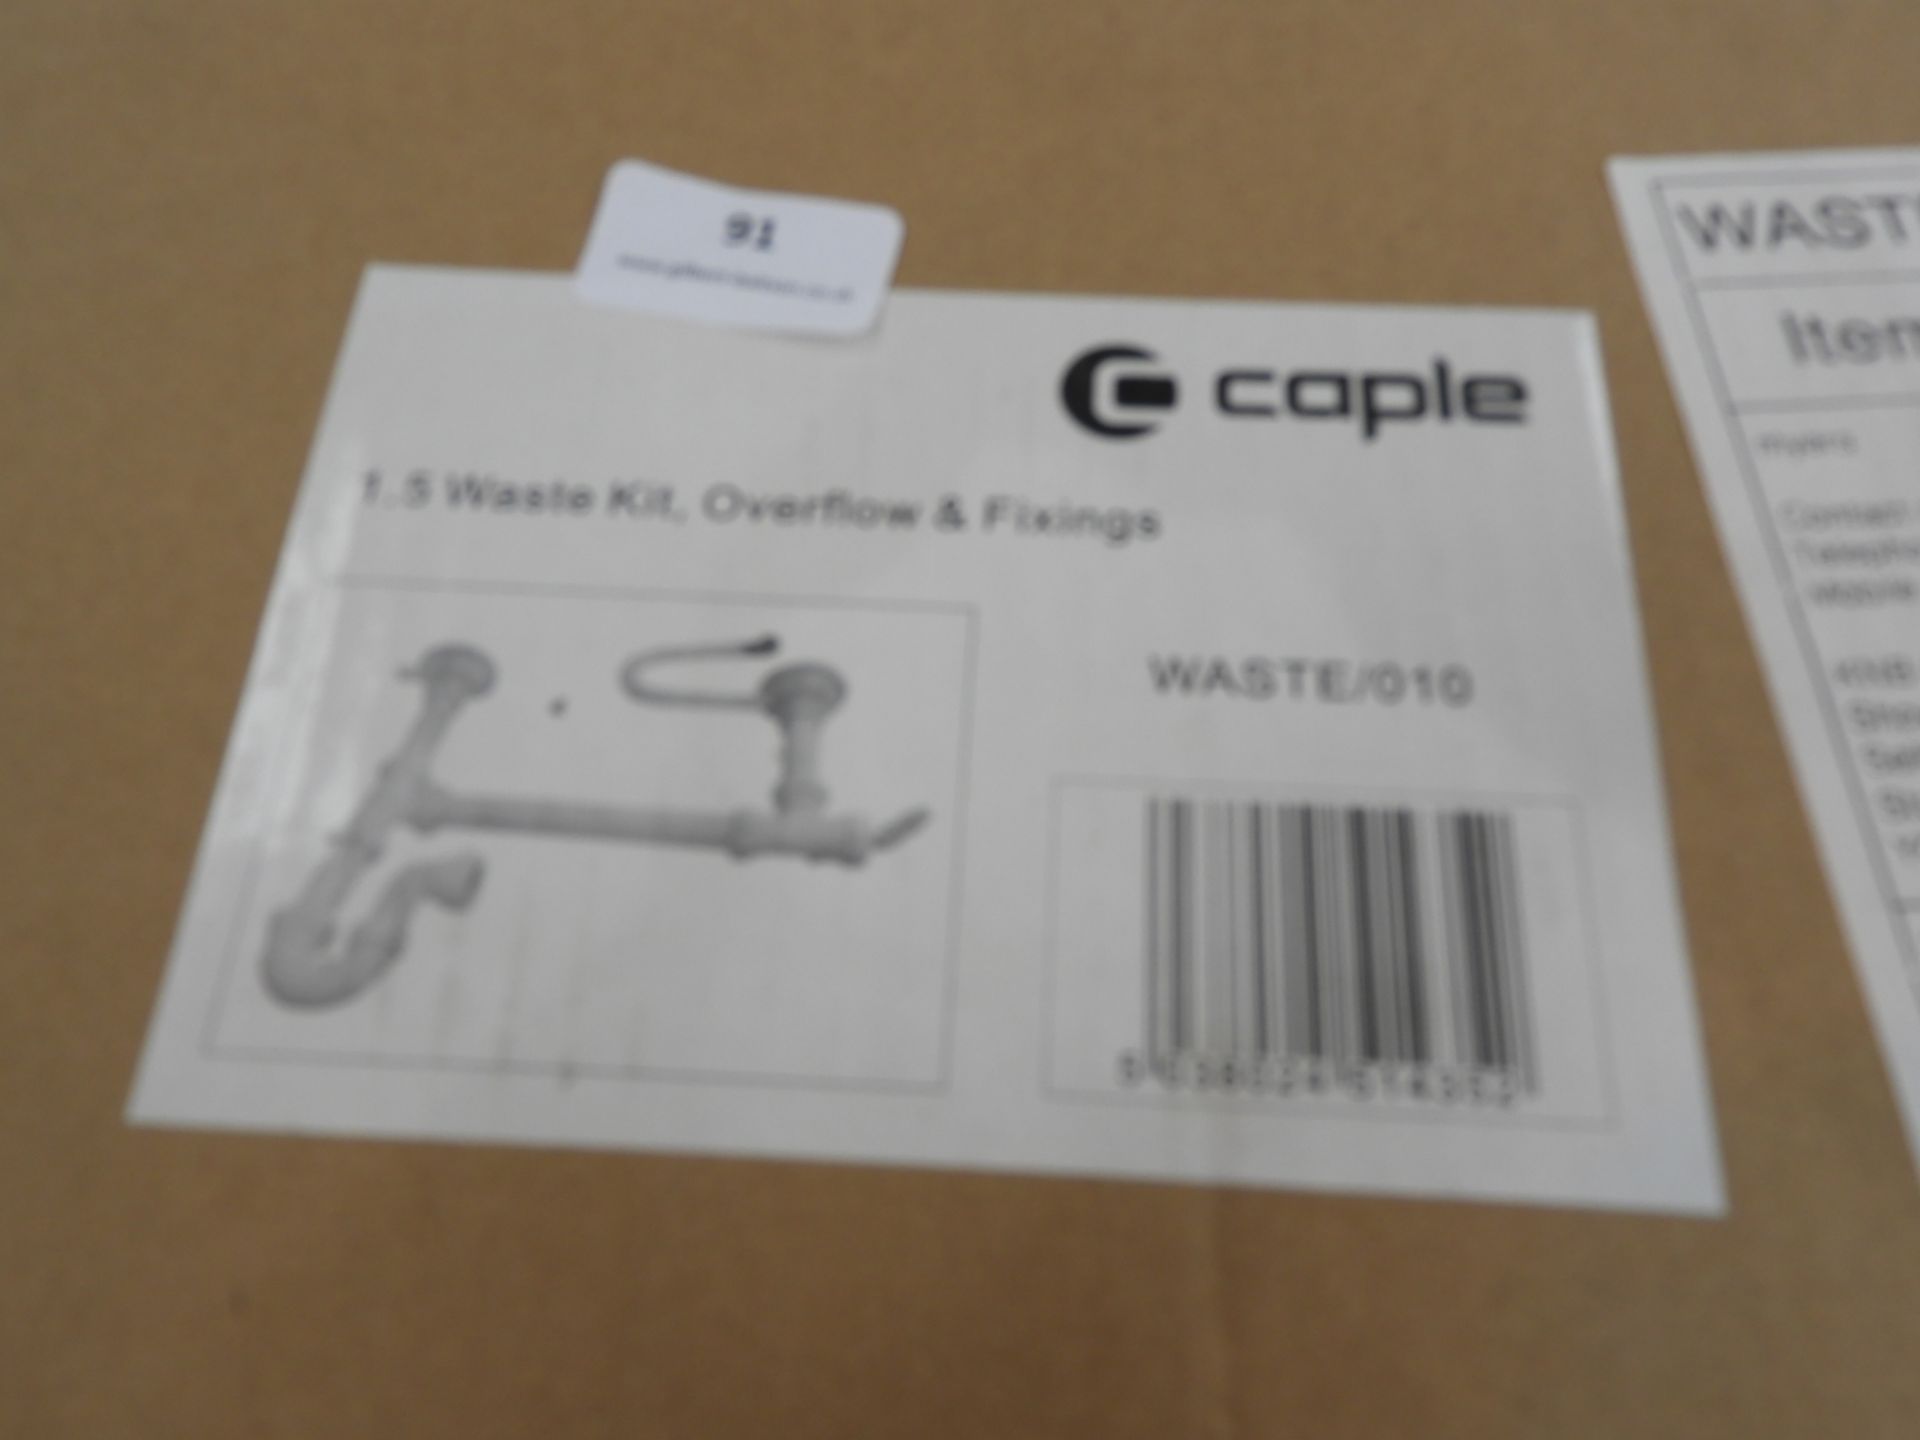 *Caple Waste/008 1.5 Waste Kit Overflow & Fittings